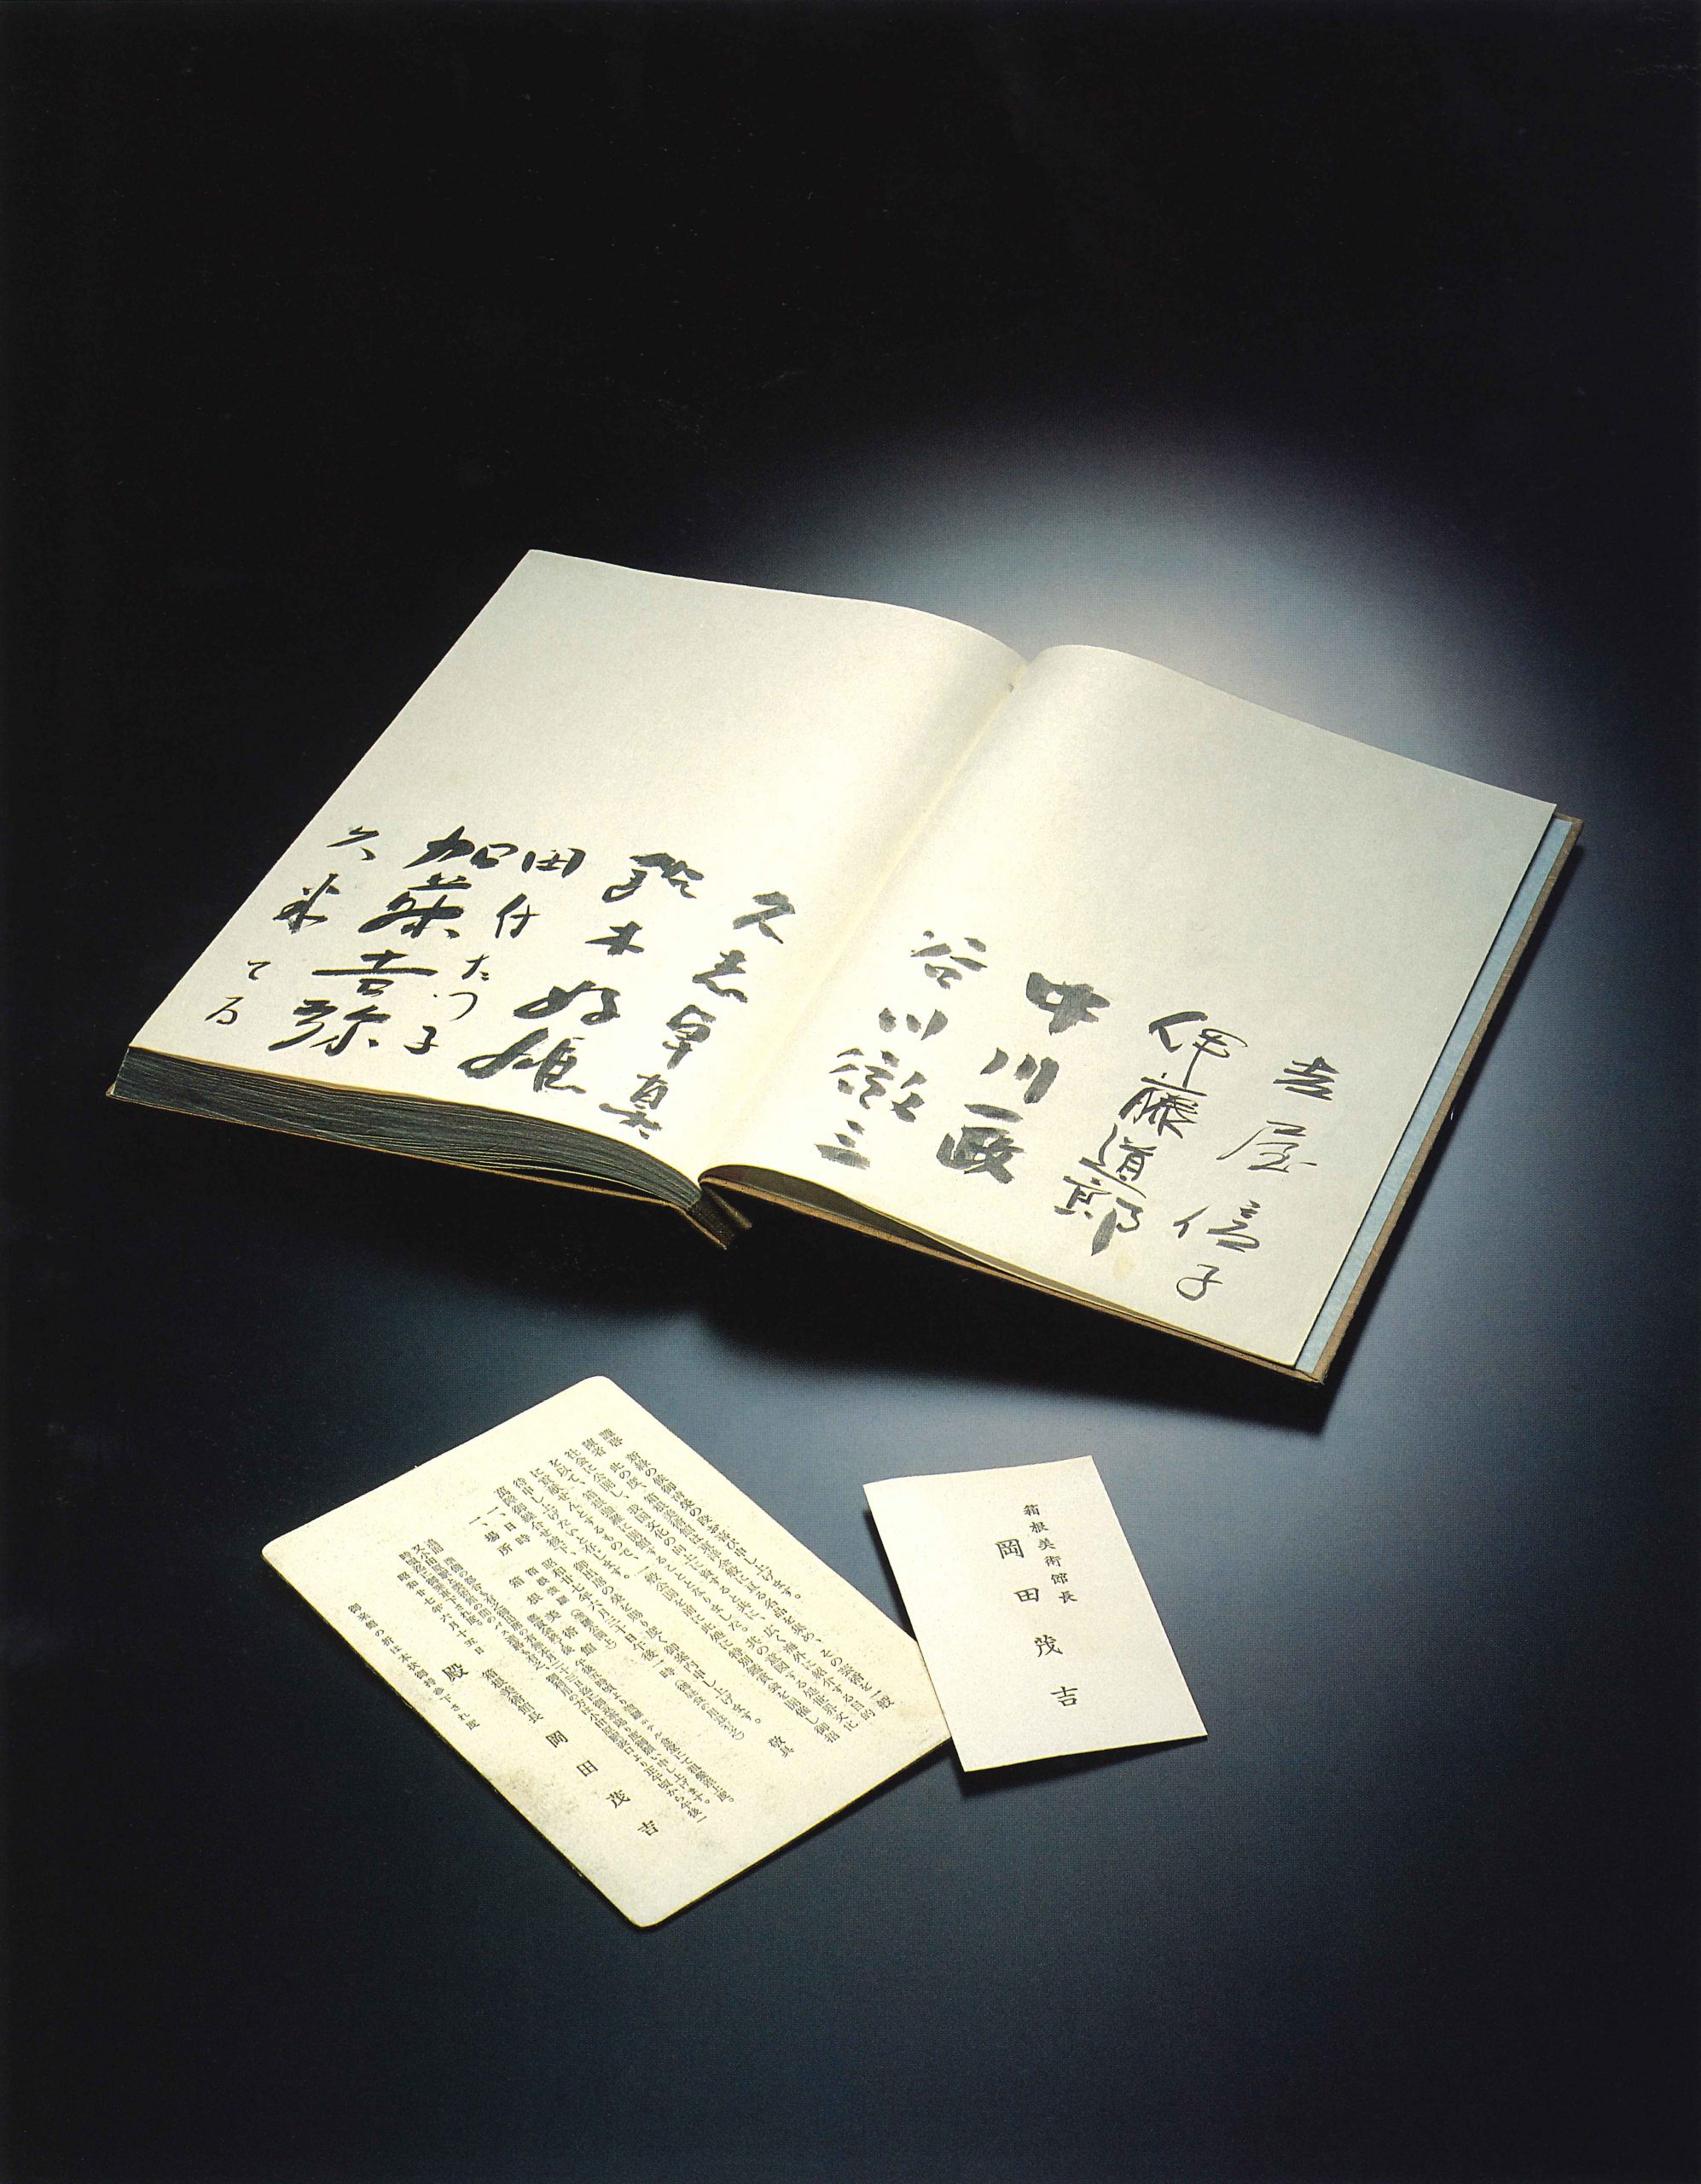 開館時の芳名録招待状と名刺には箱根美術館館長岡田茂吉とある